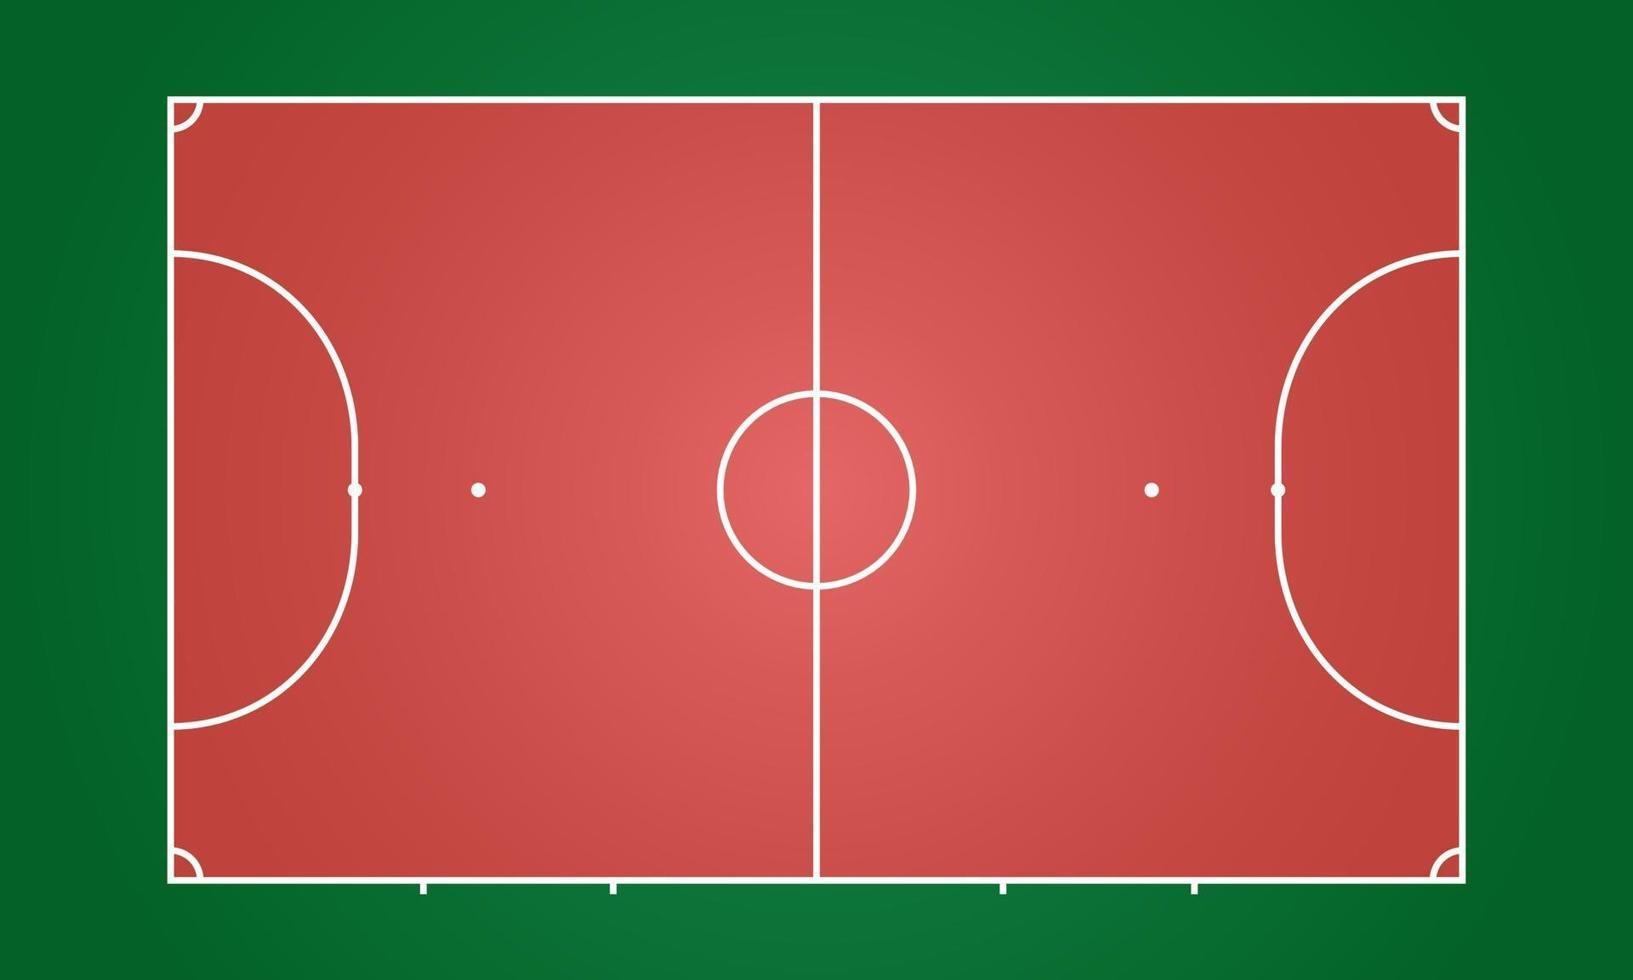 Futsal court indoor and outdoor stadium vector illustration